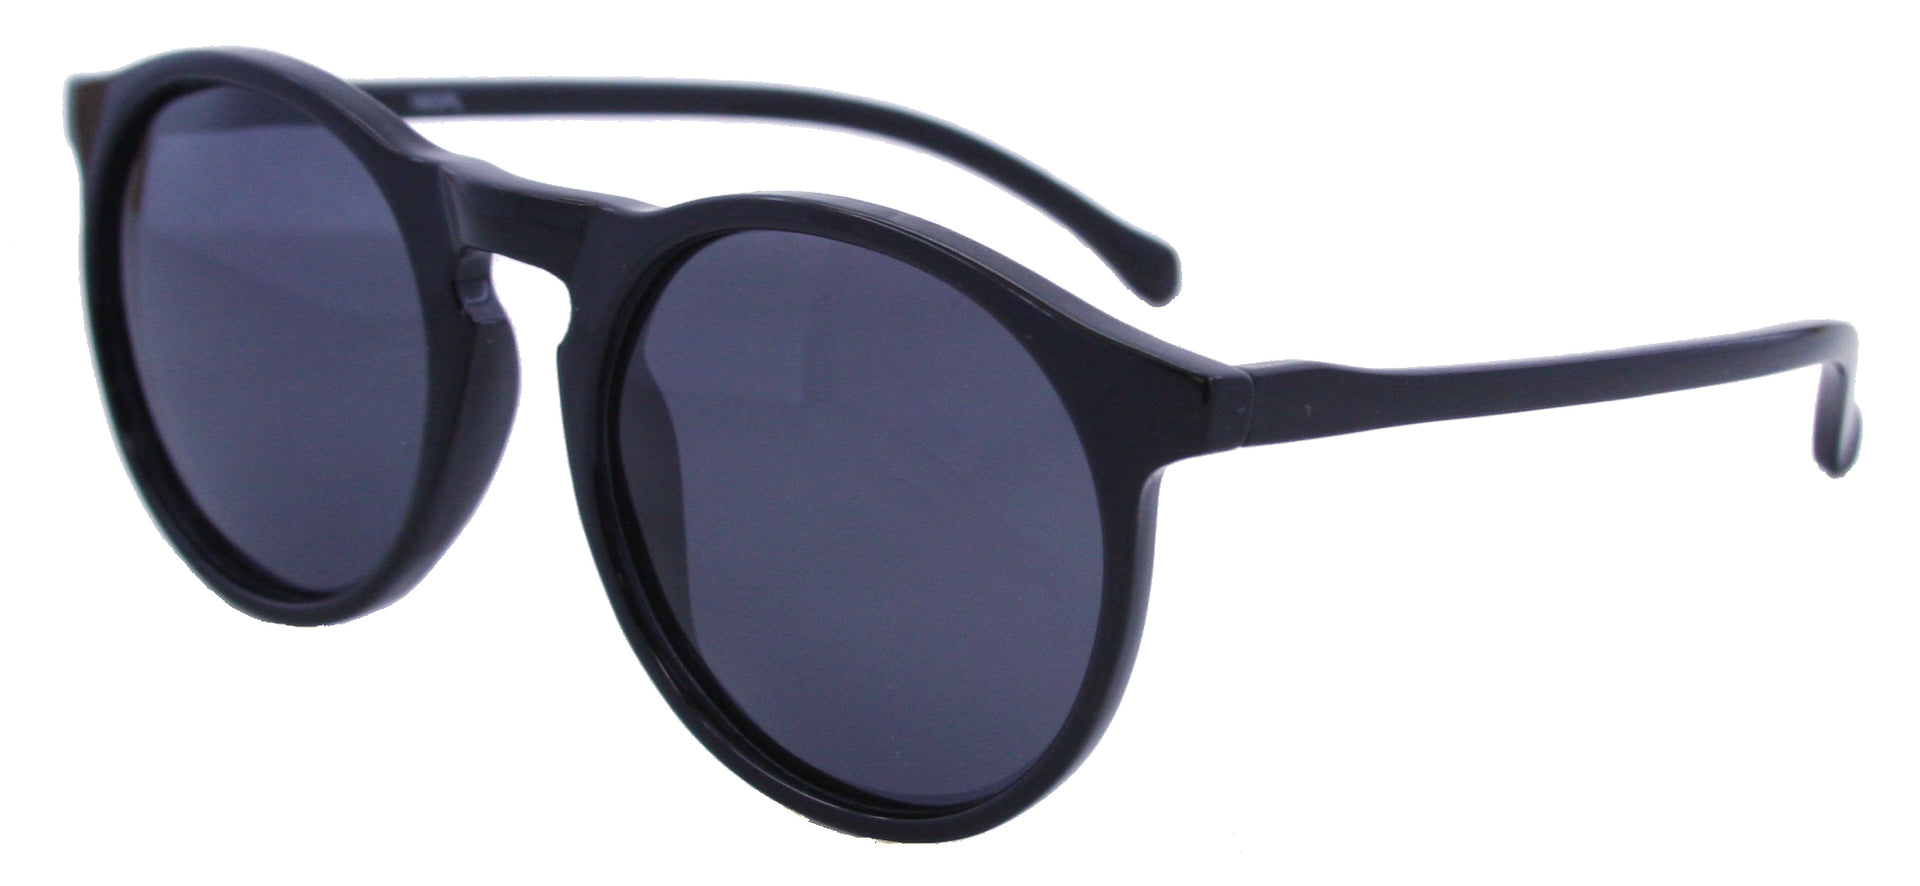 1603PL - Wholesale Round Keyhole Style Polarized Sunglasses in Black